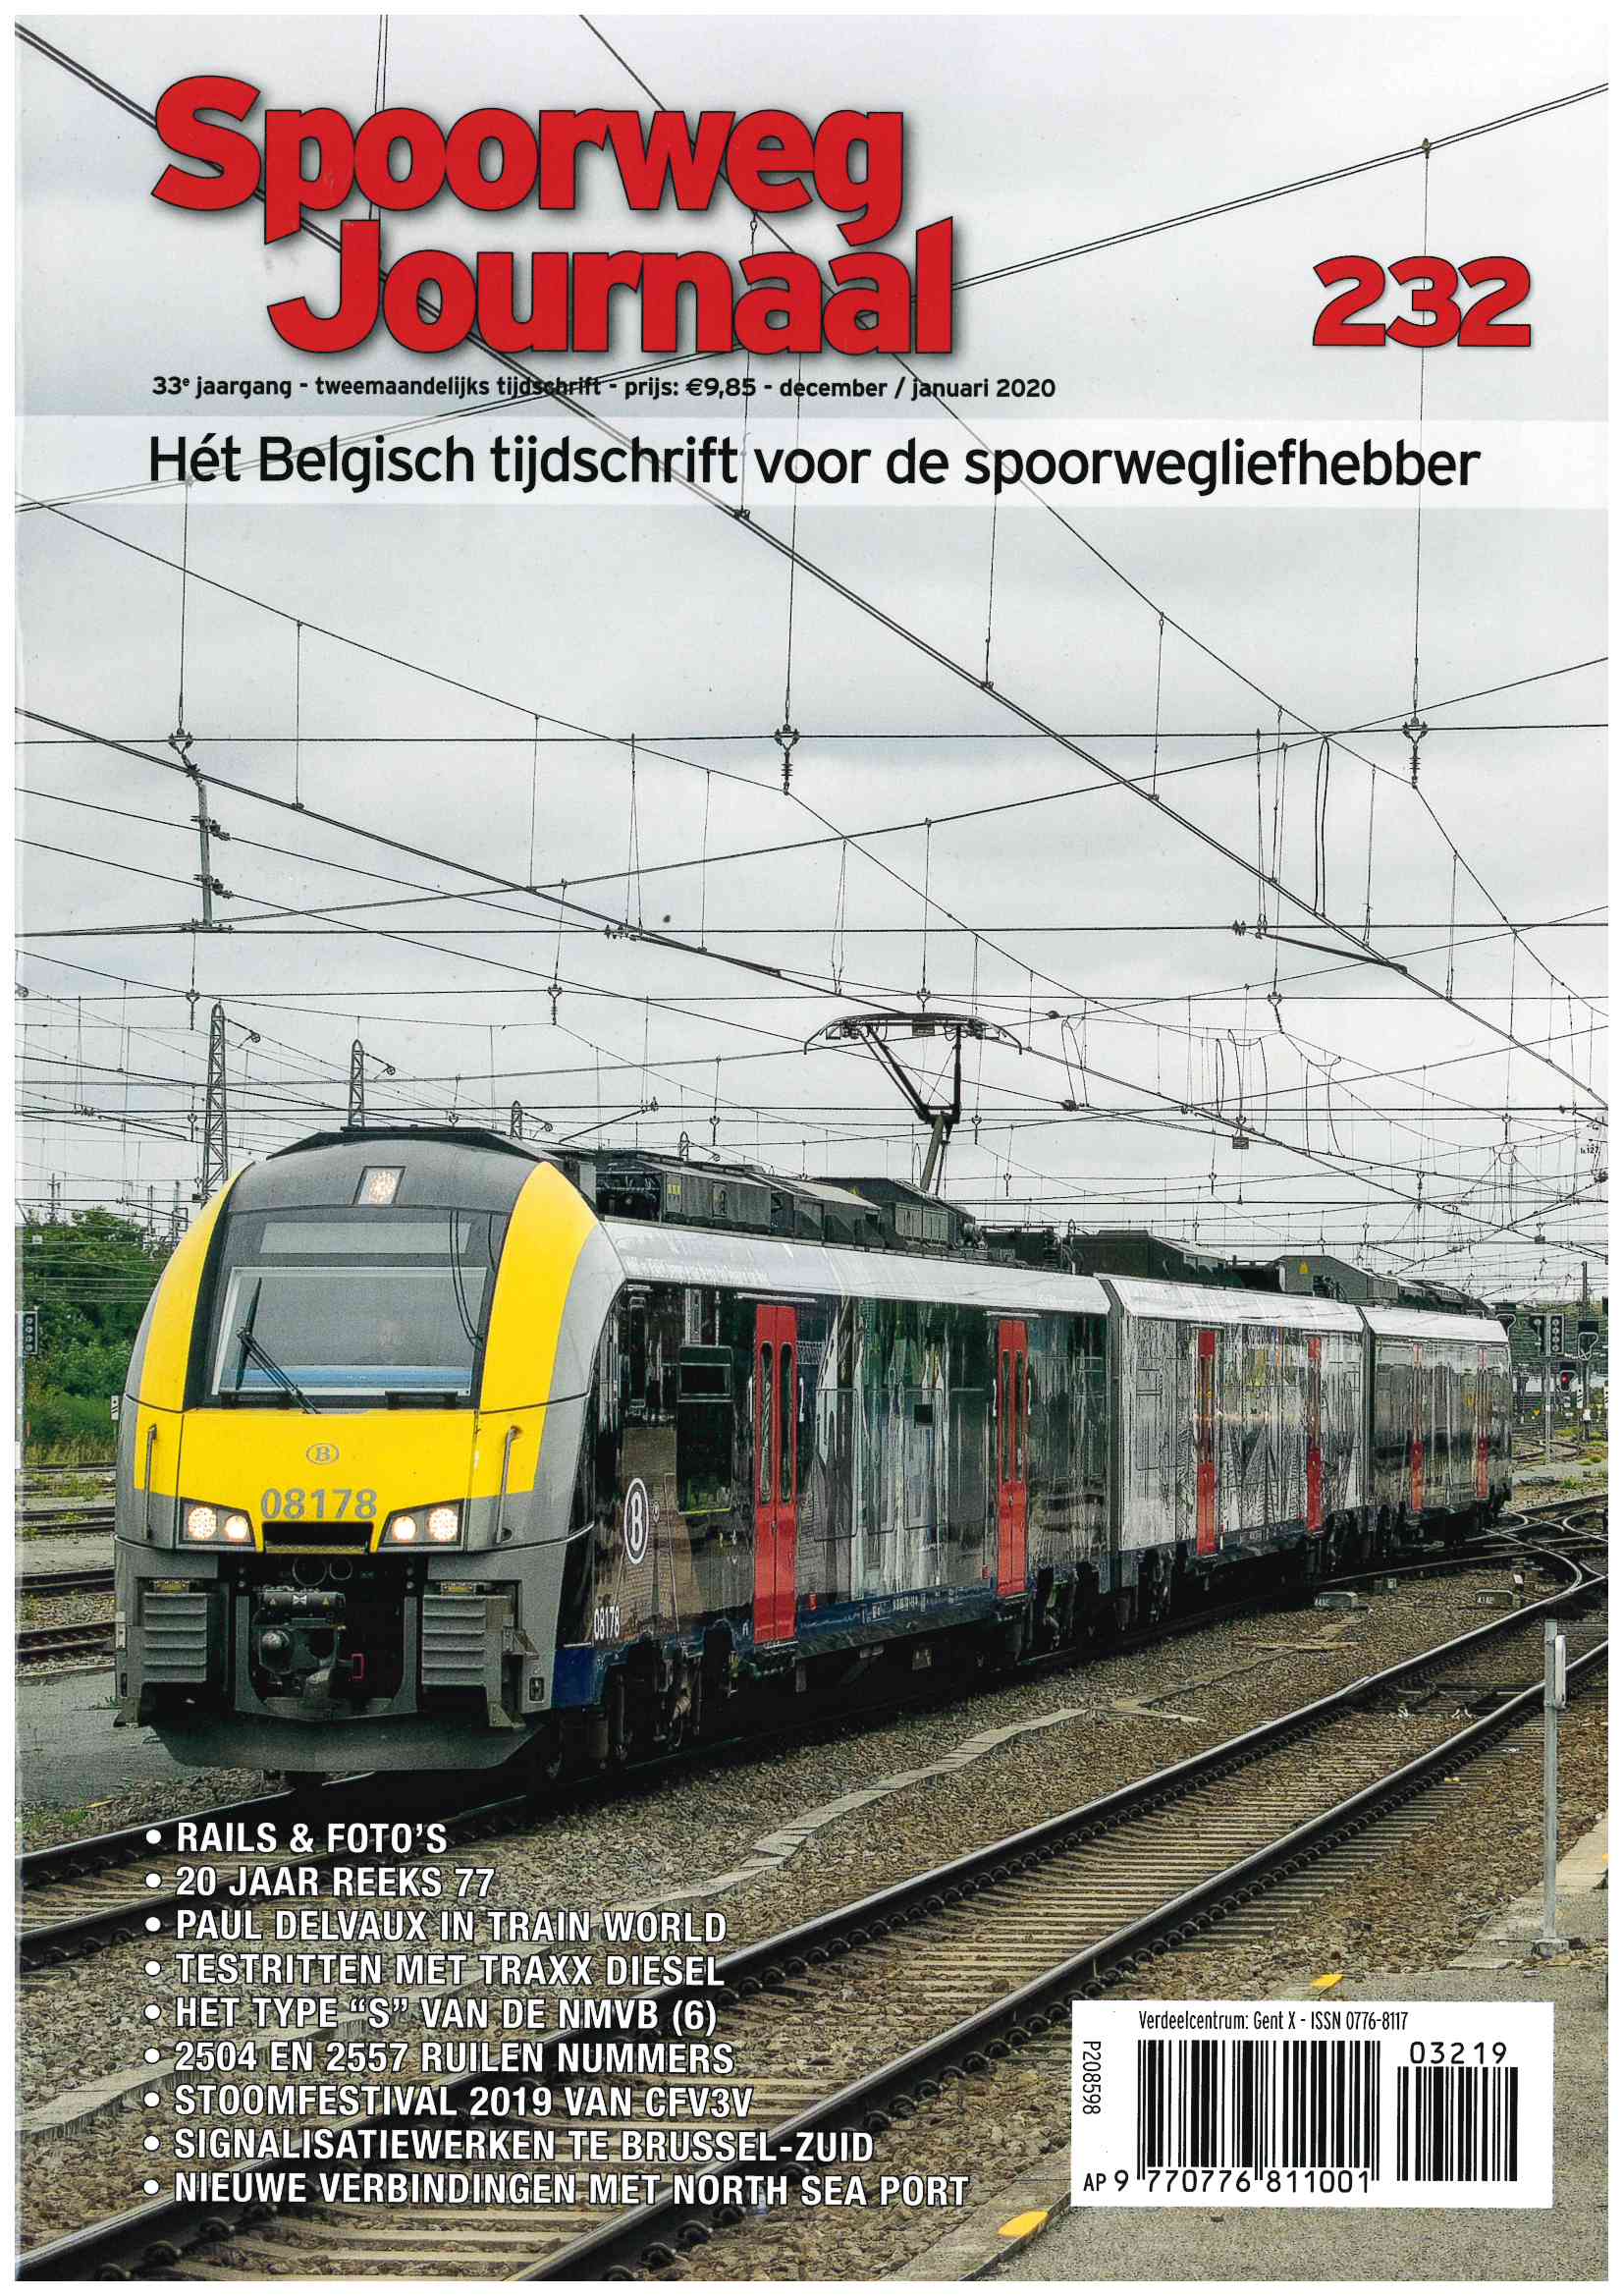 Spoorweg Journal 232 niederländische/flämische Ausgabe